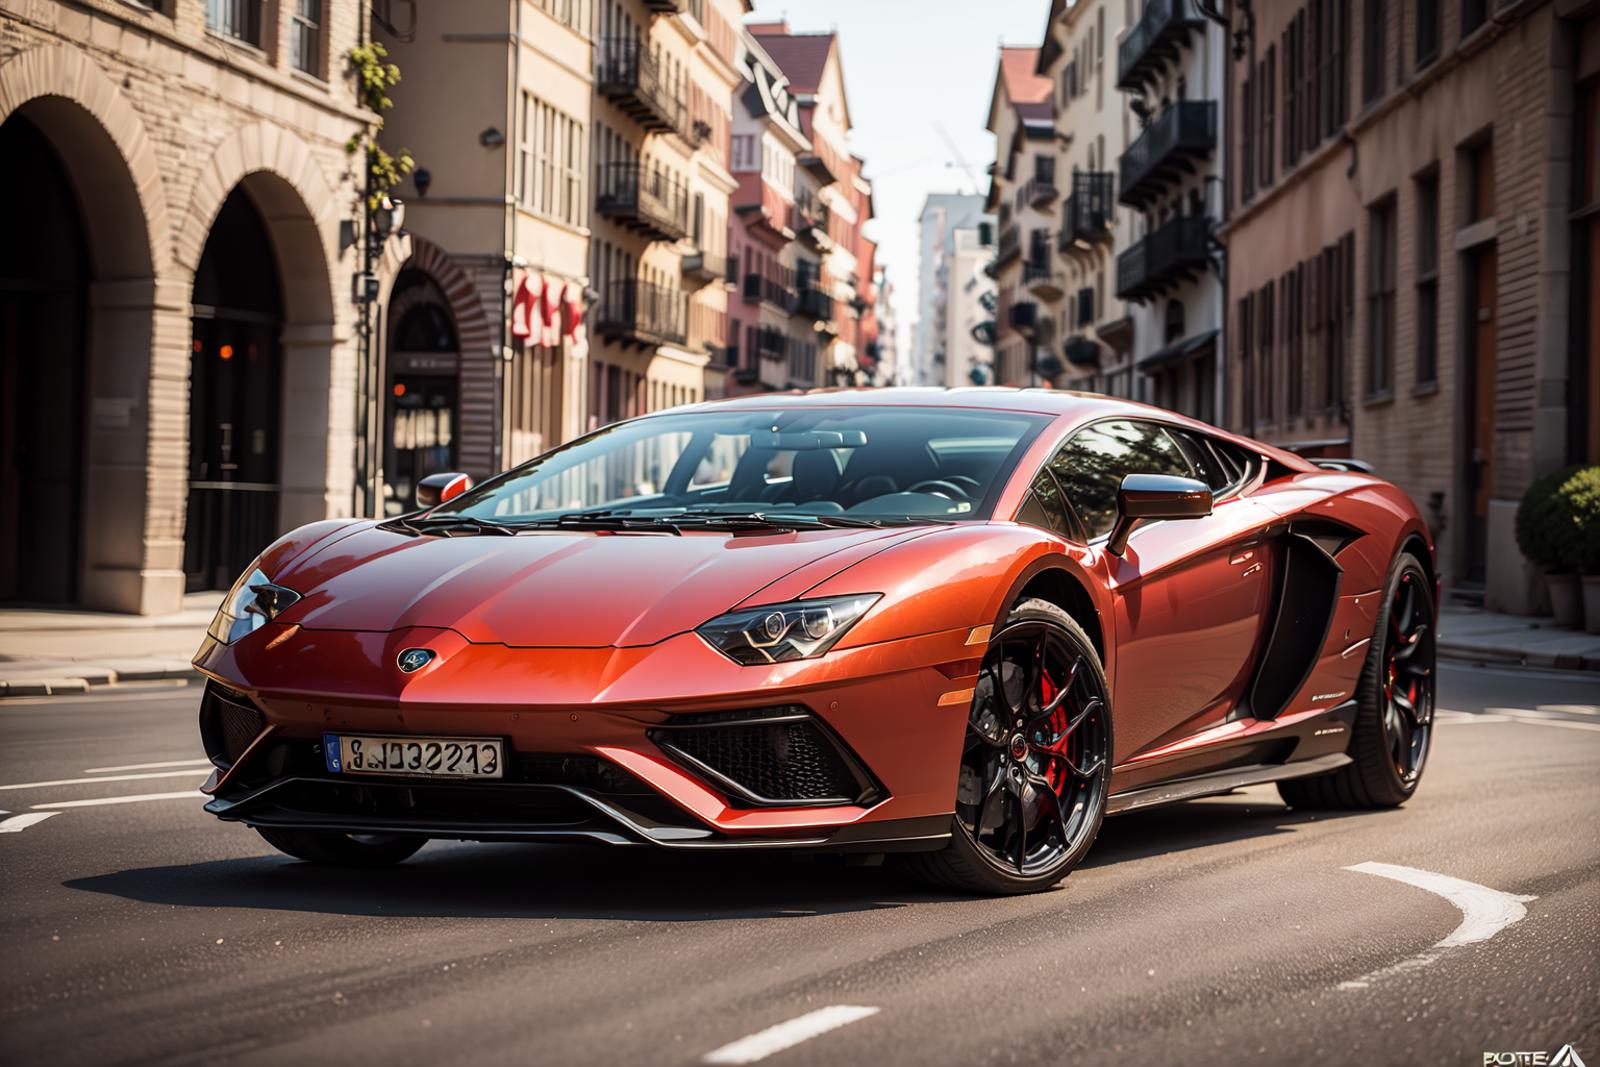 Lamborghini Aventador image by LDWorksDervlex